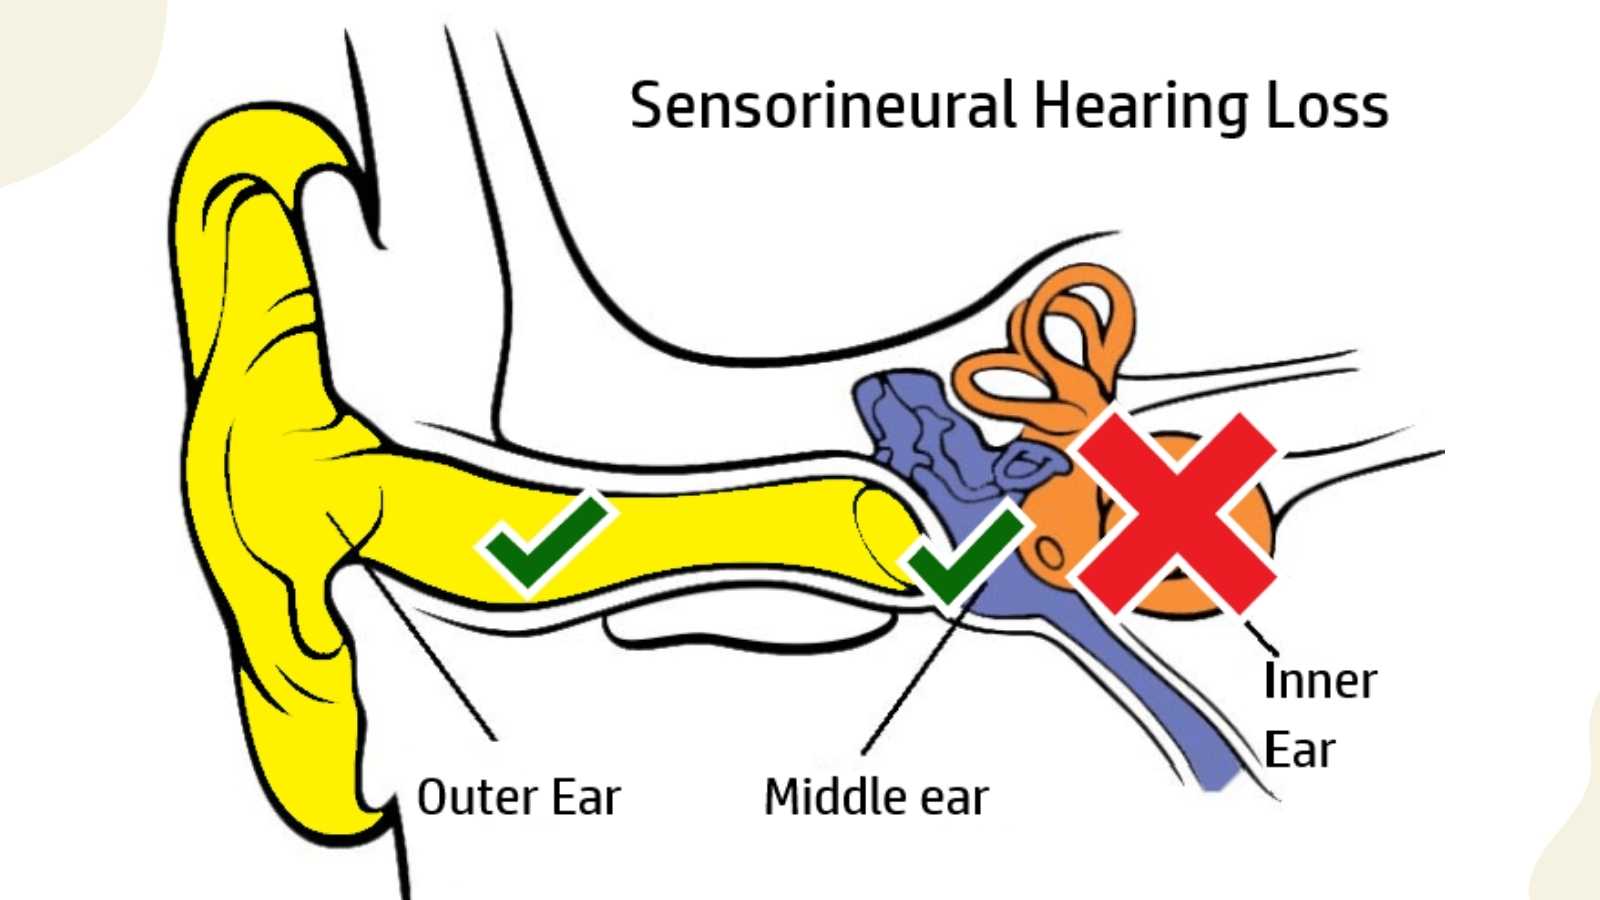 Image showing sensorineural hearing loss